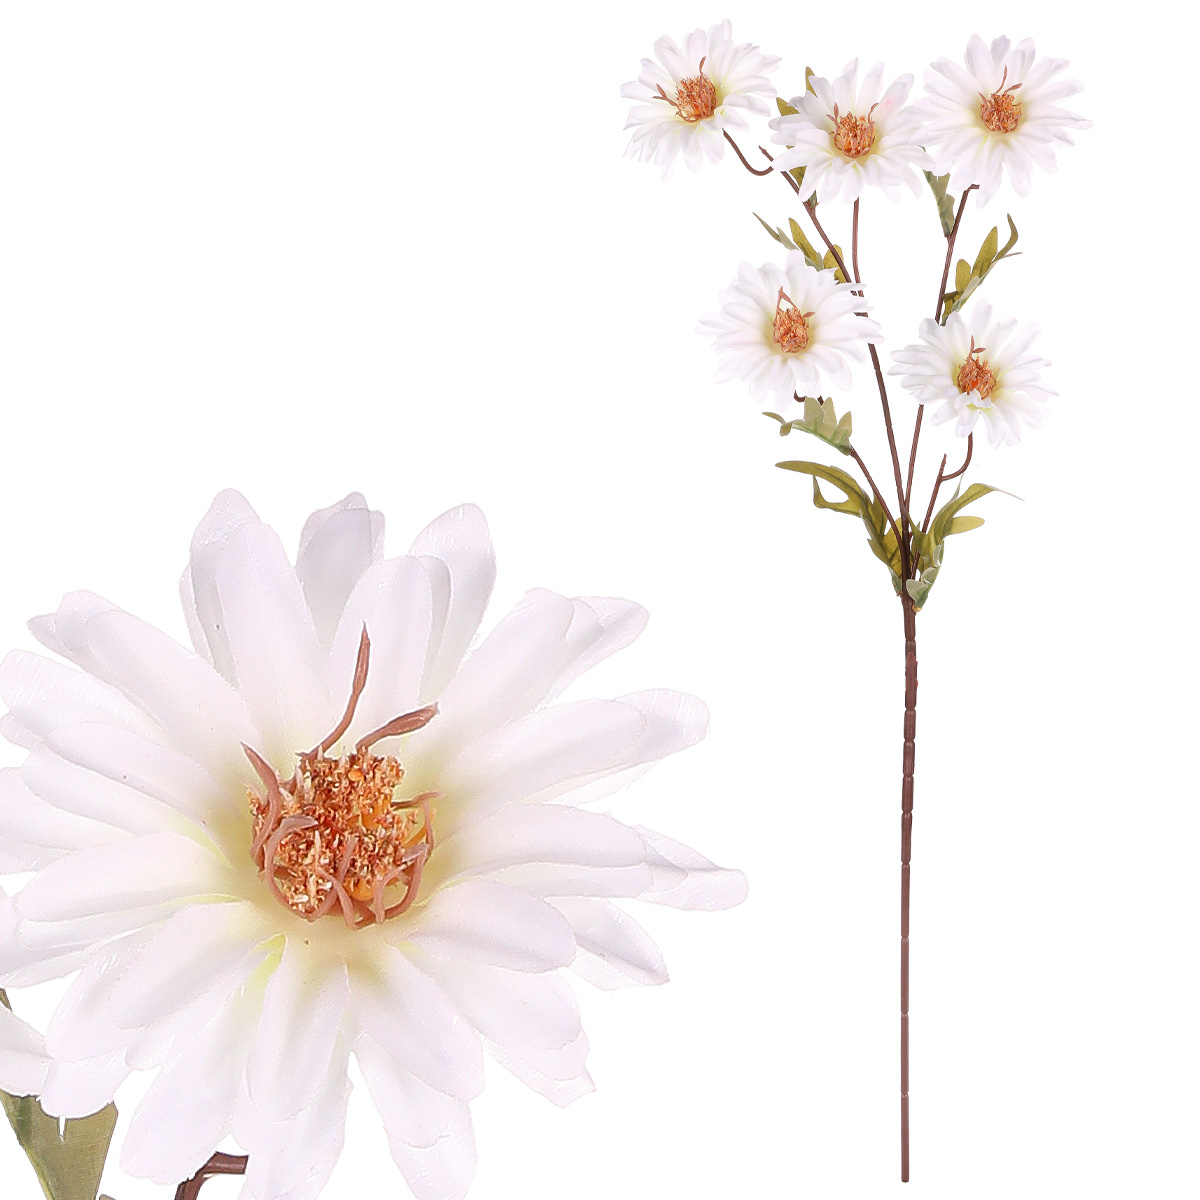 Chryzantéma, barva: bílá. Květina umělá.